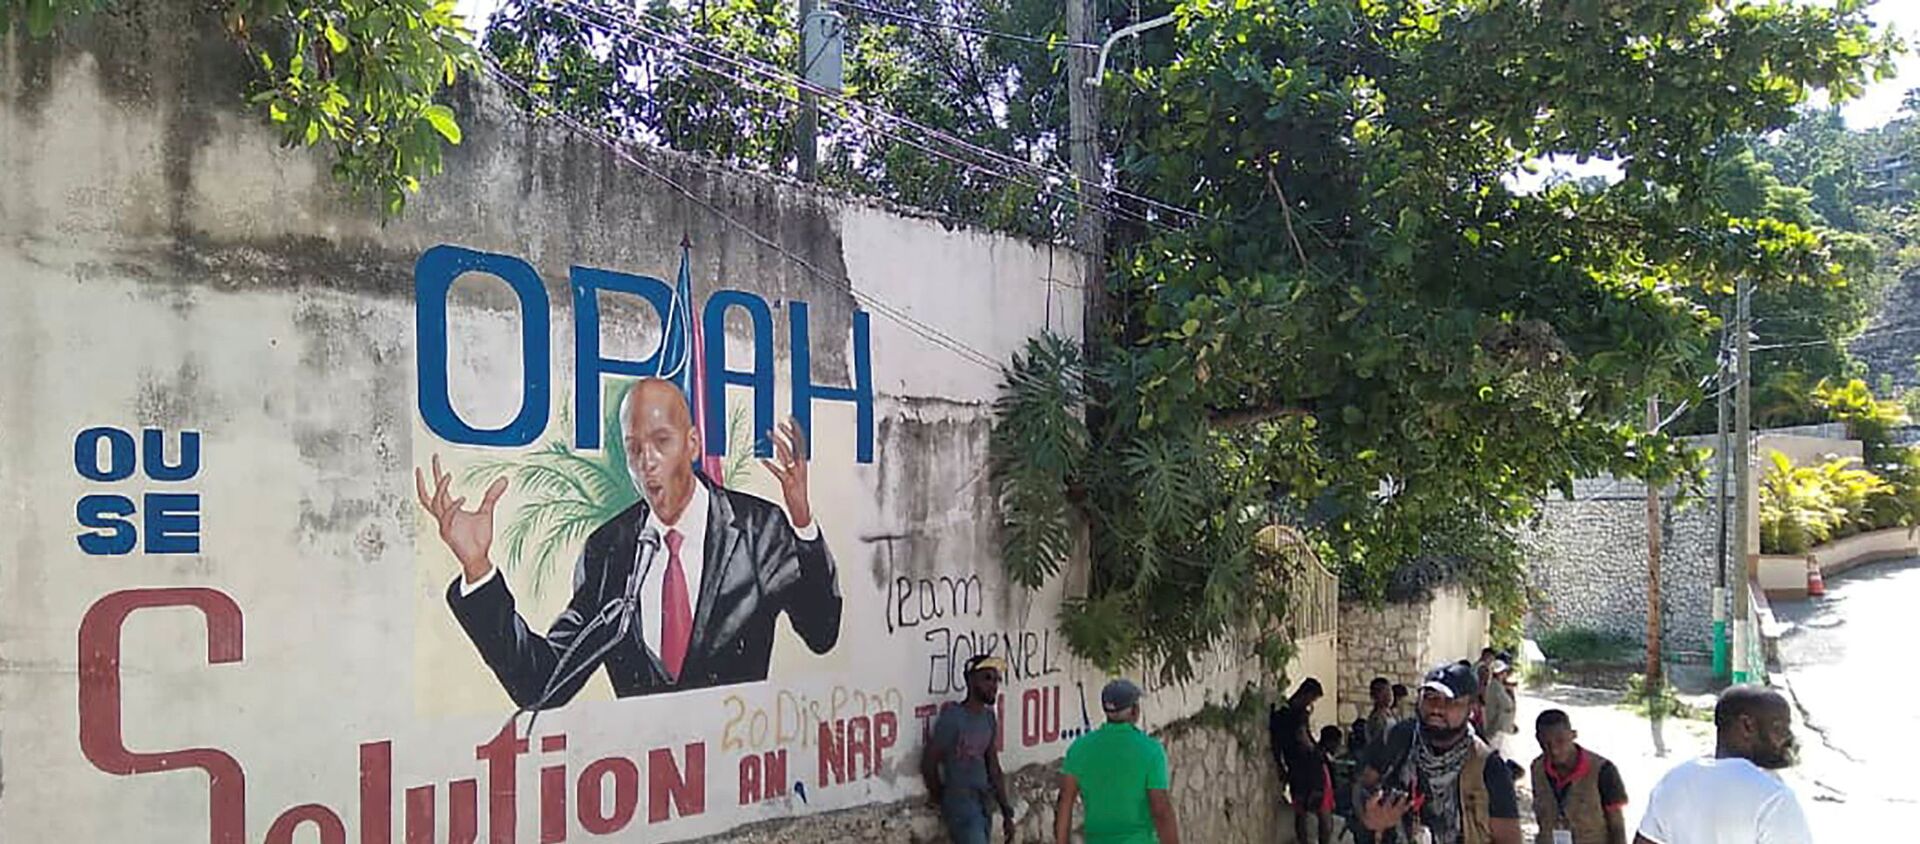 Mọi người đi ngang qua bức tường vẽ hình Tổng thống Haiti Jovenel Moise, sau khi ông bị những kẻ tấn công chưa rõ danh tính bắn chết tại dinh thự ở thủ đô Port-au-Prince, Haiti vào ngày 7/7/2021 - Sputnik Việt Nam, 1920, 09.07.2021